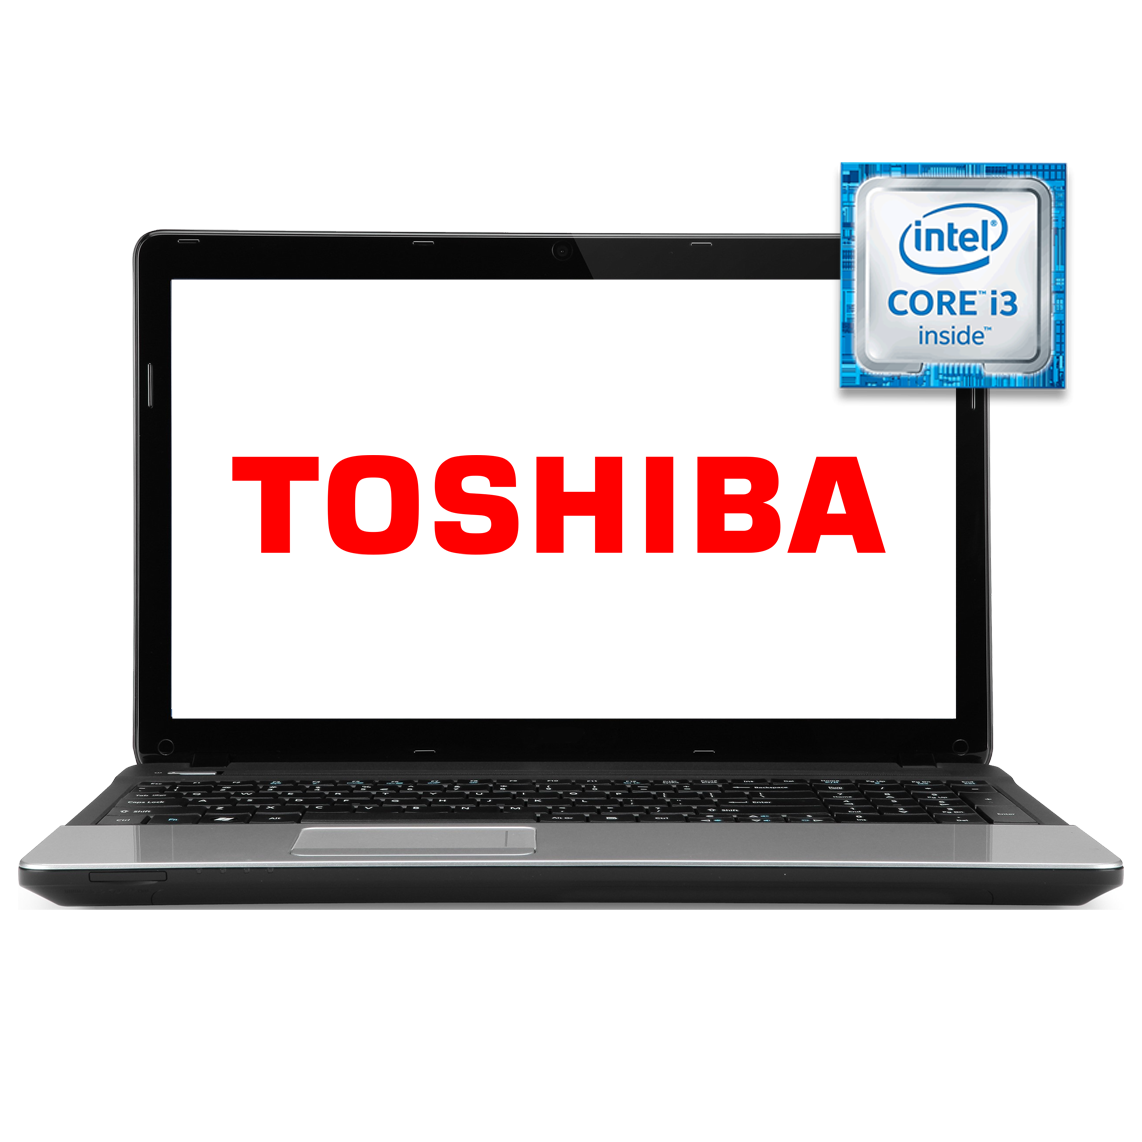 Toshiba - 17.3 inch Core i3 4th Gen